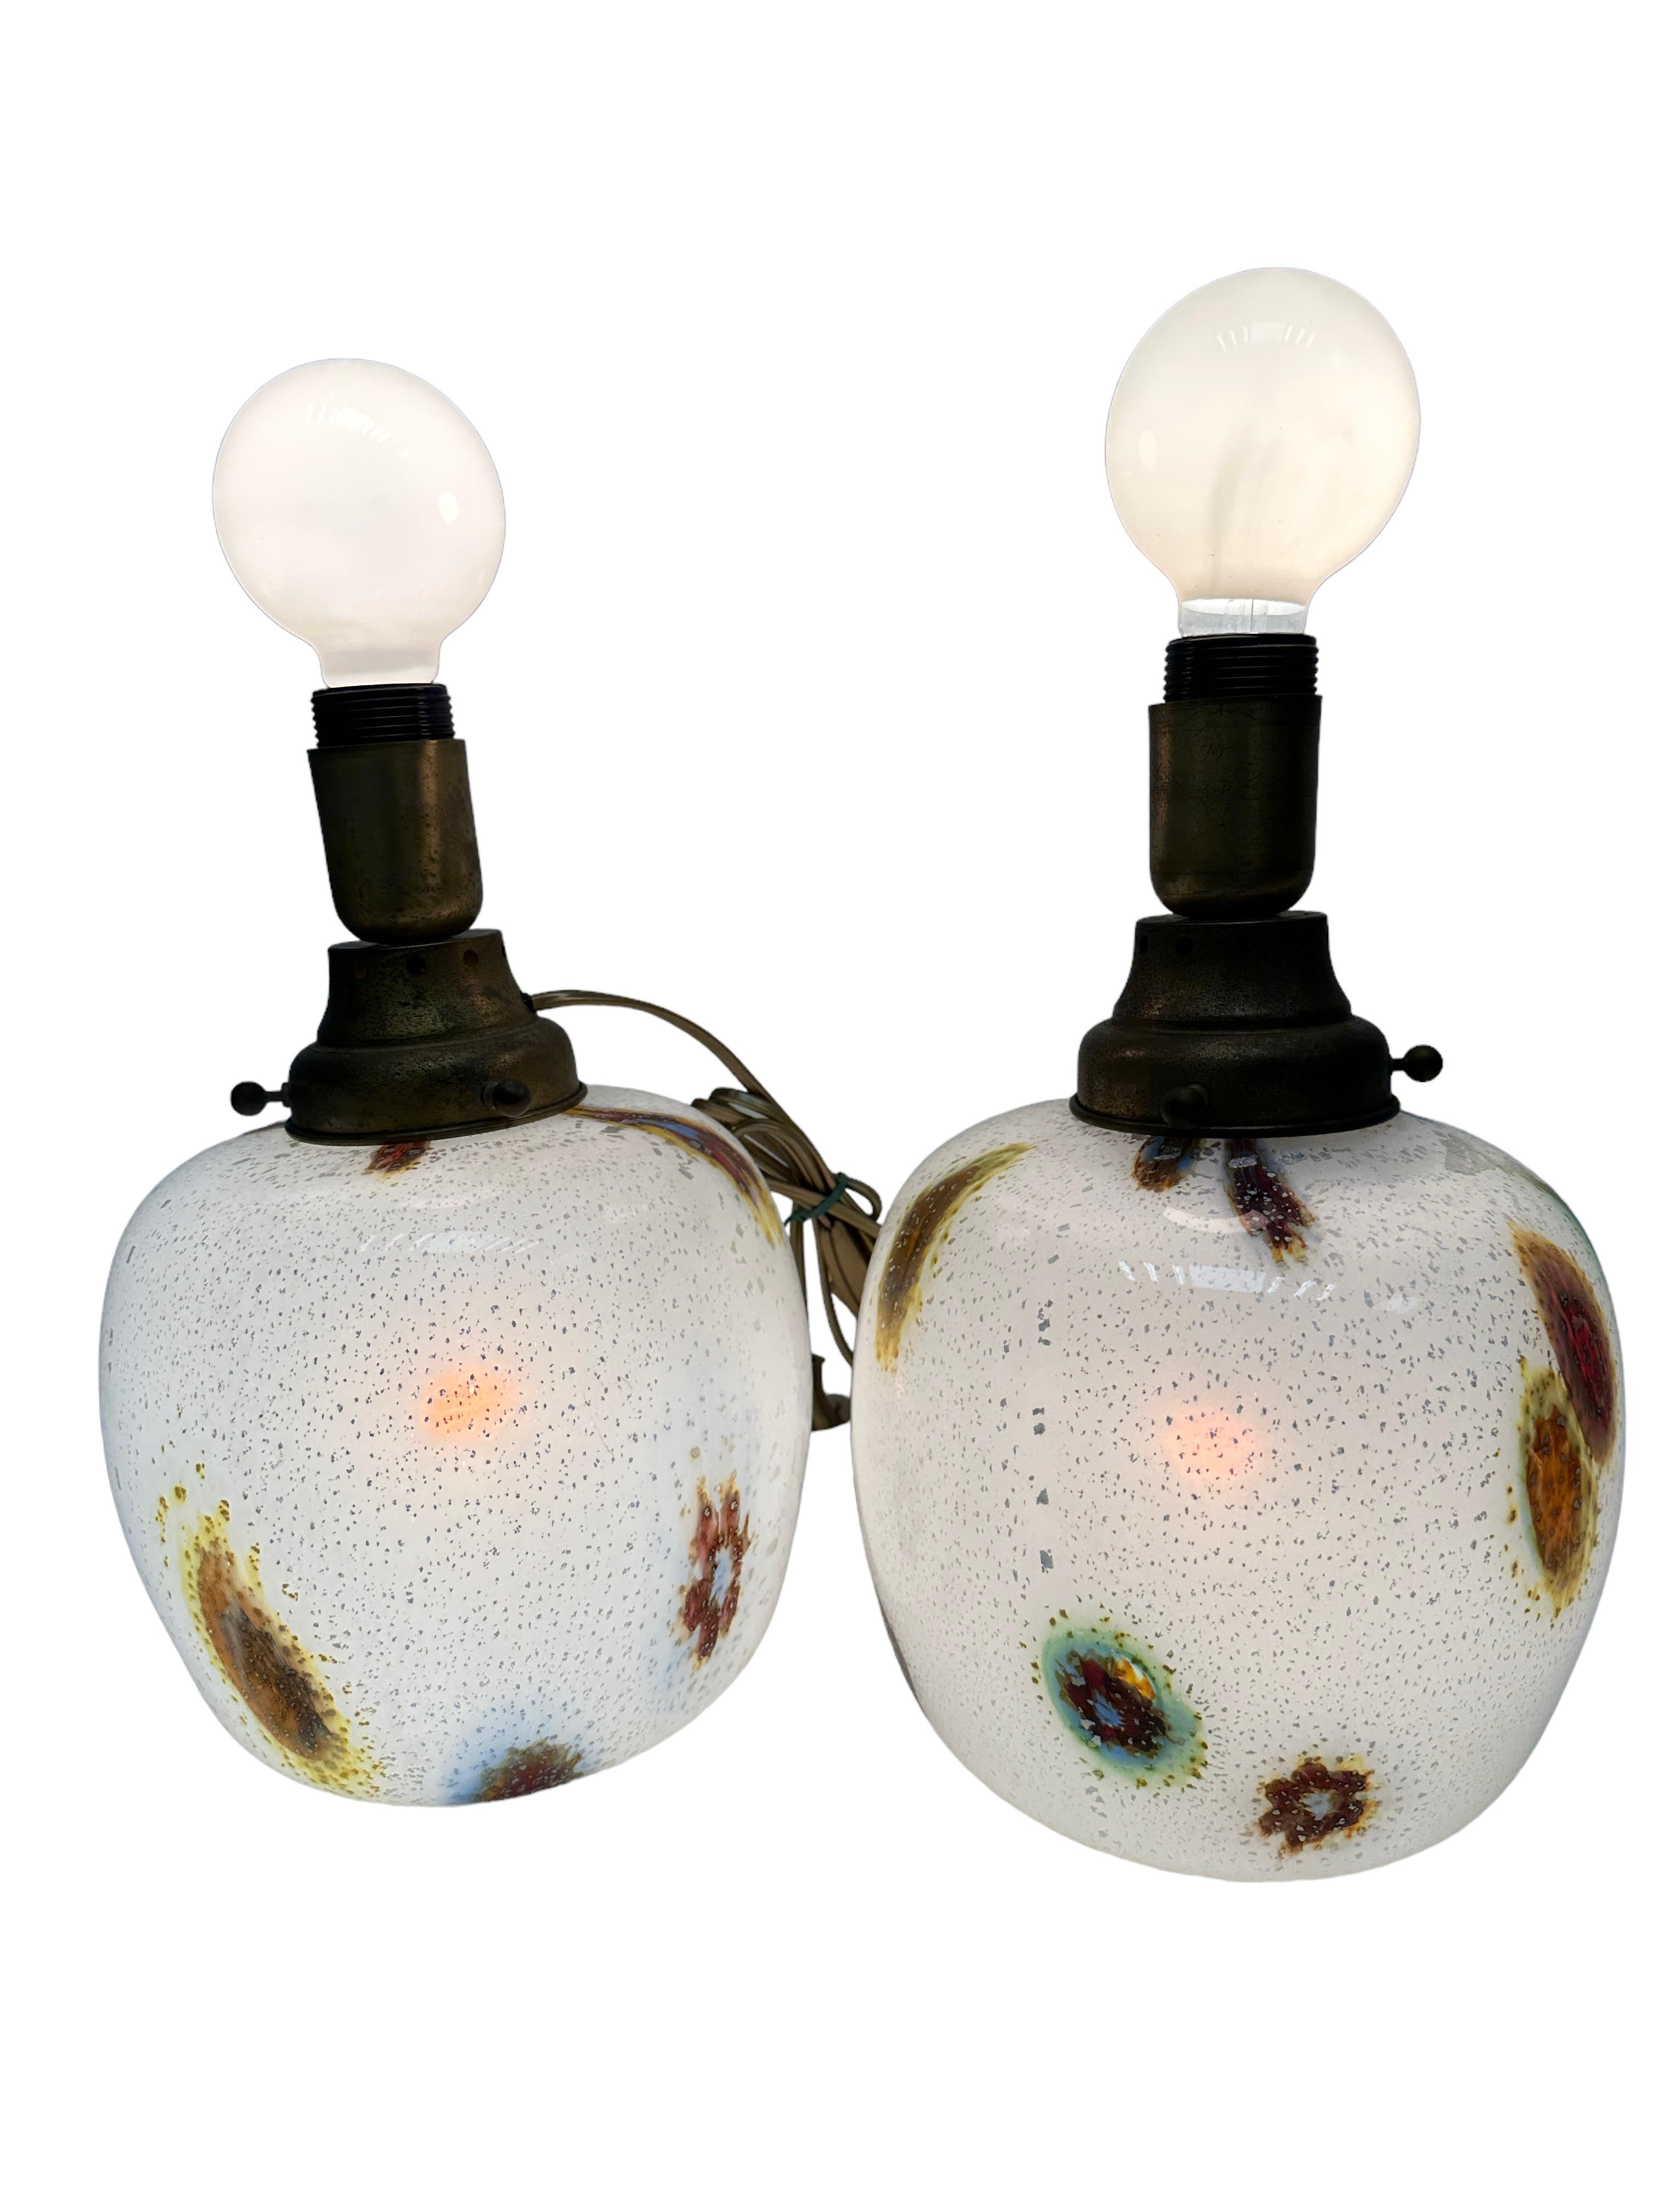 Schönes Paar großer monumentaler Tischlampen oder Beistelltischlampen. Aus Glas und Messing, von Dino Martens, hergestellt von Aureliano Toso in Murano, Italien, um 1960. Jede Leuchte benötigt eine europäische E27 / 110 Volt Edison Glühbirne, bis zu